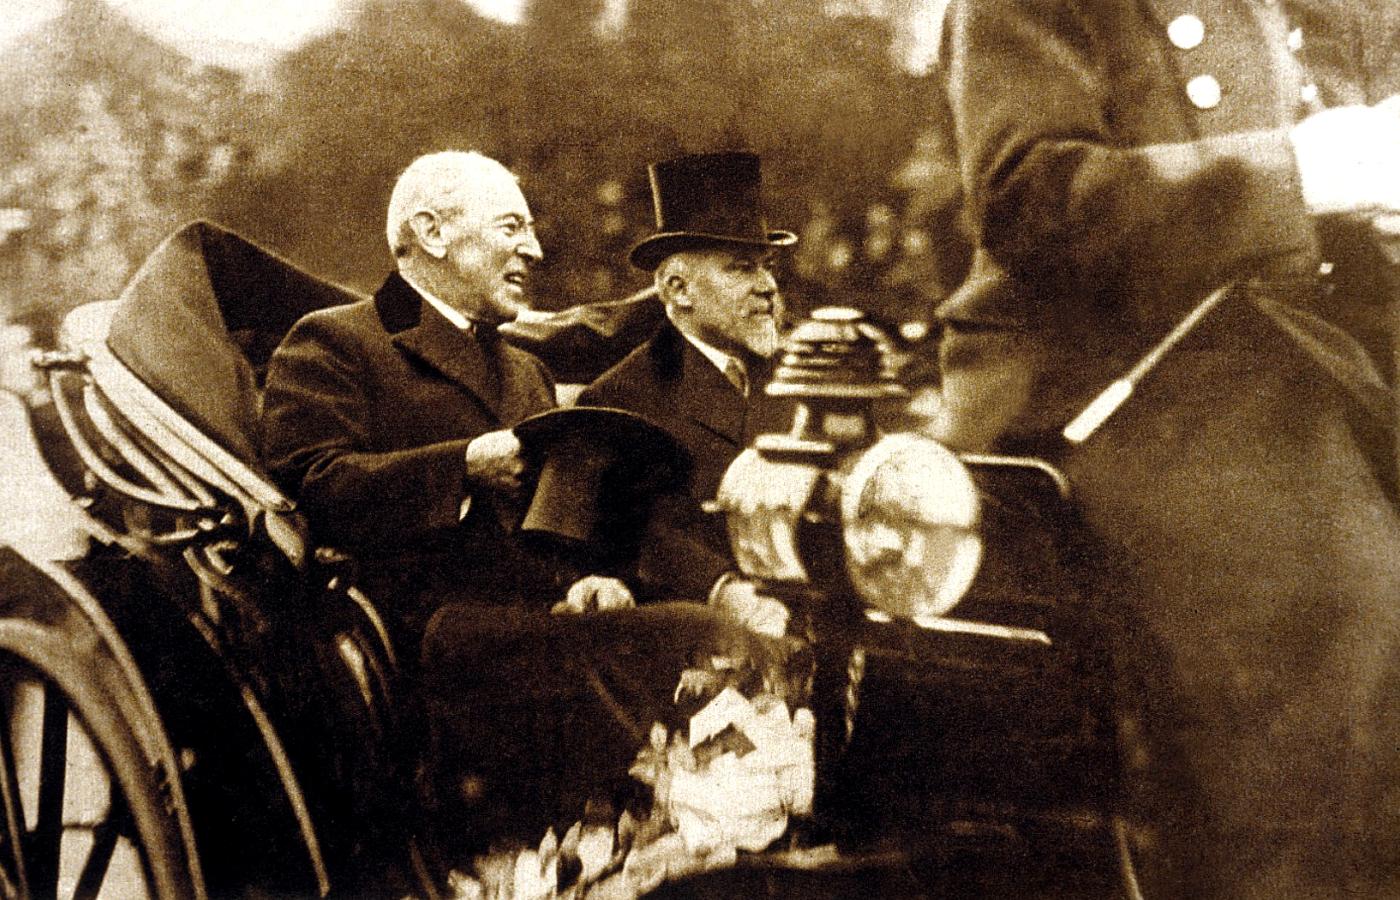 Prezydent USA Woodrow Wilson (w powozie z lewej, bez kapelusza) w Paryżu w 1918 r. To tutaj nabawił się hiszpanki. Obok prezydent Francji Raymond Poincare